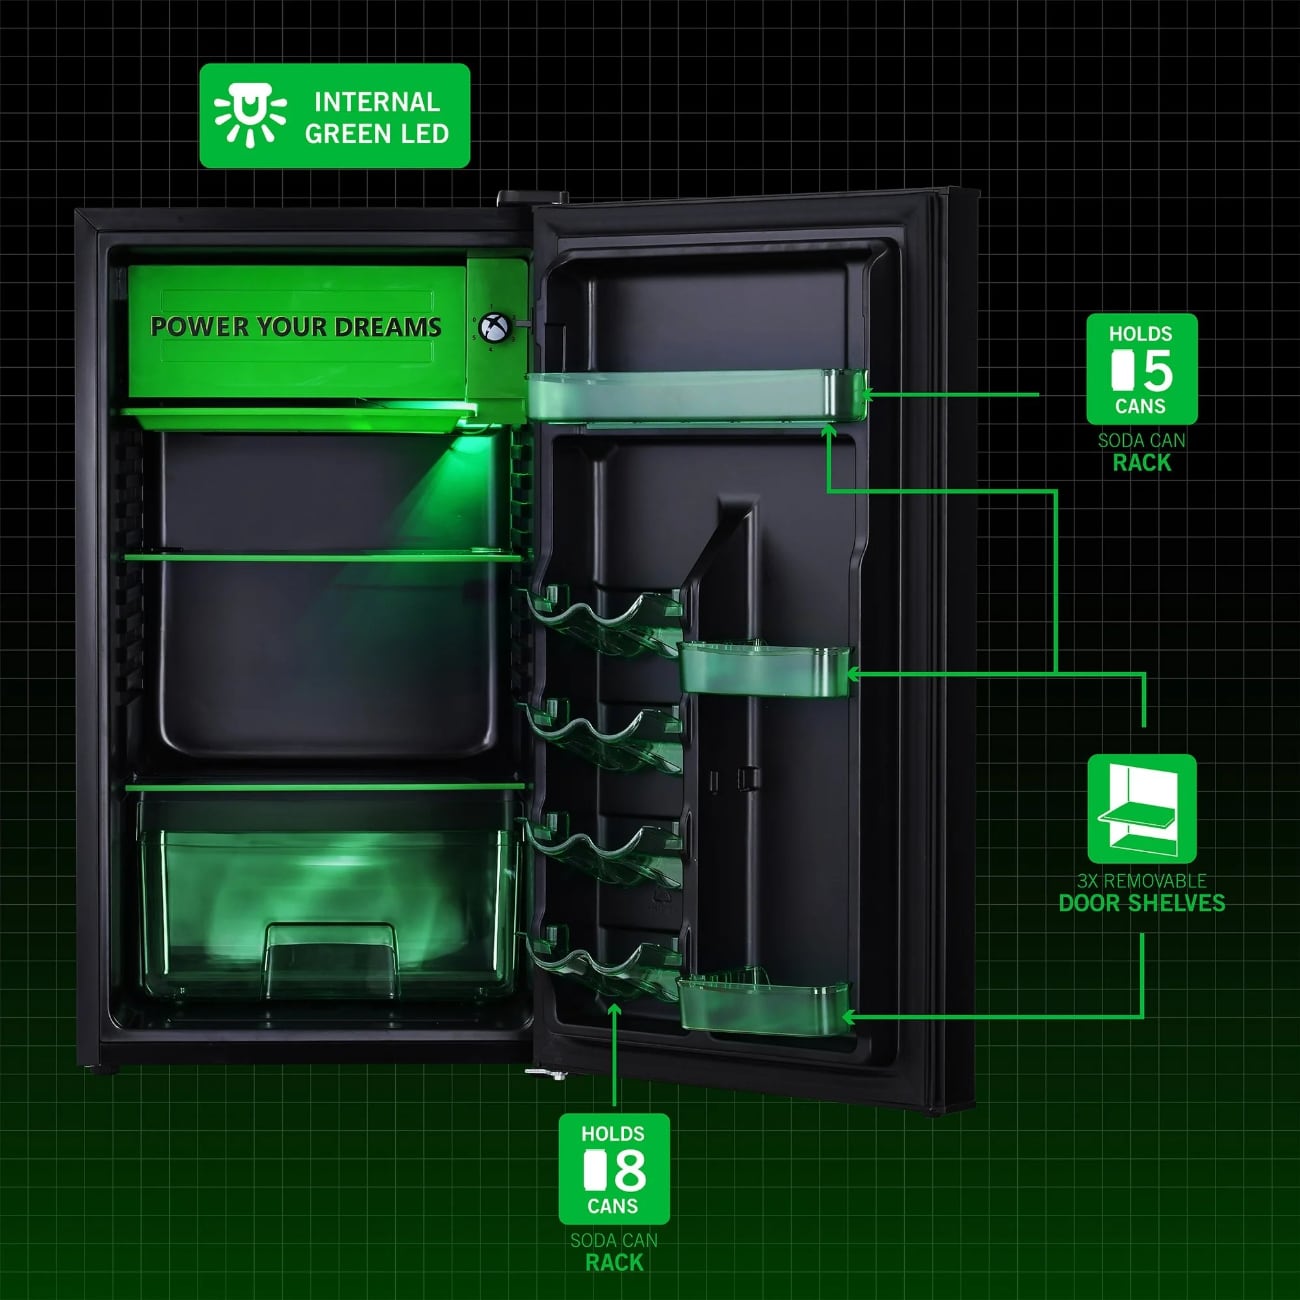 Xbox Series X: Unboxing-Video zum riesigen Xbox Kühlschrank